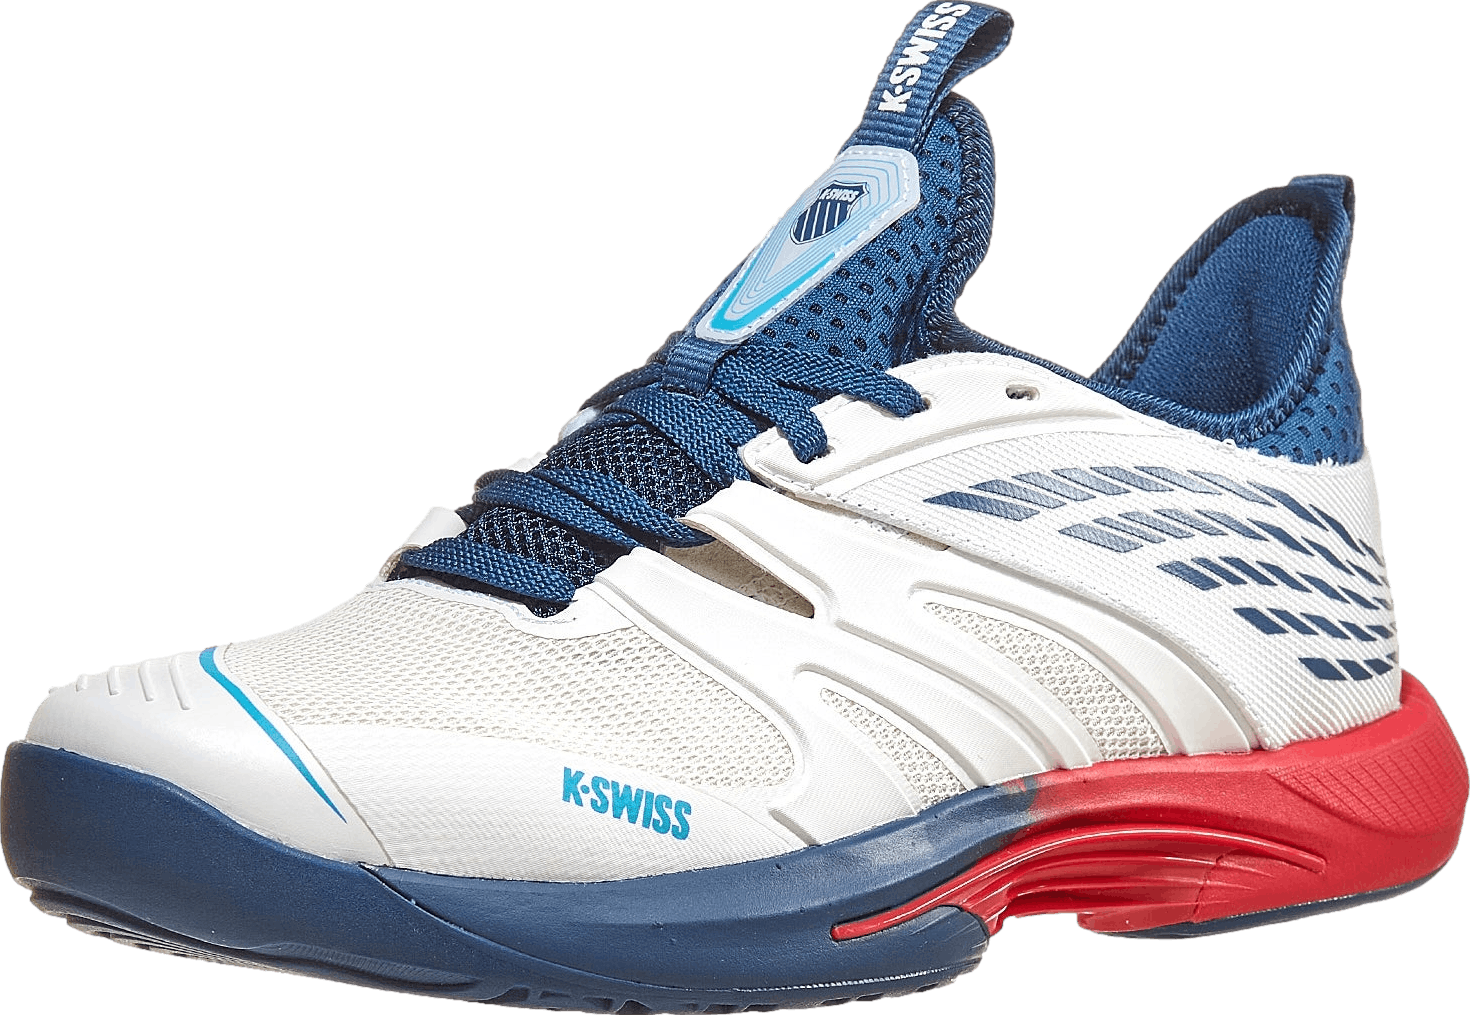 KSwiss Men's Speedtrac Tennis Shoes